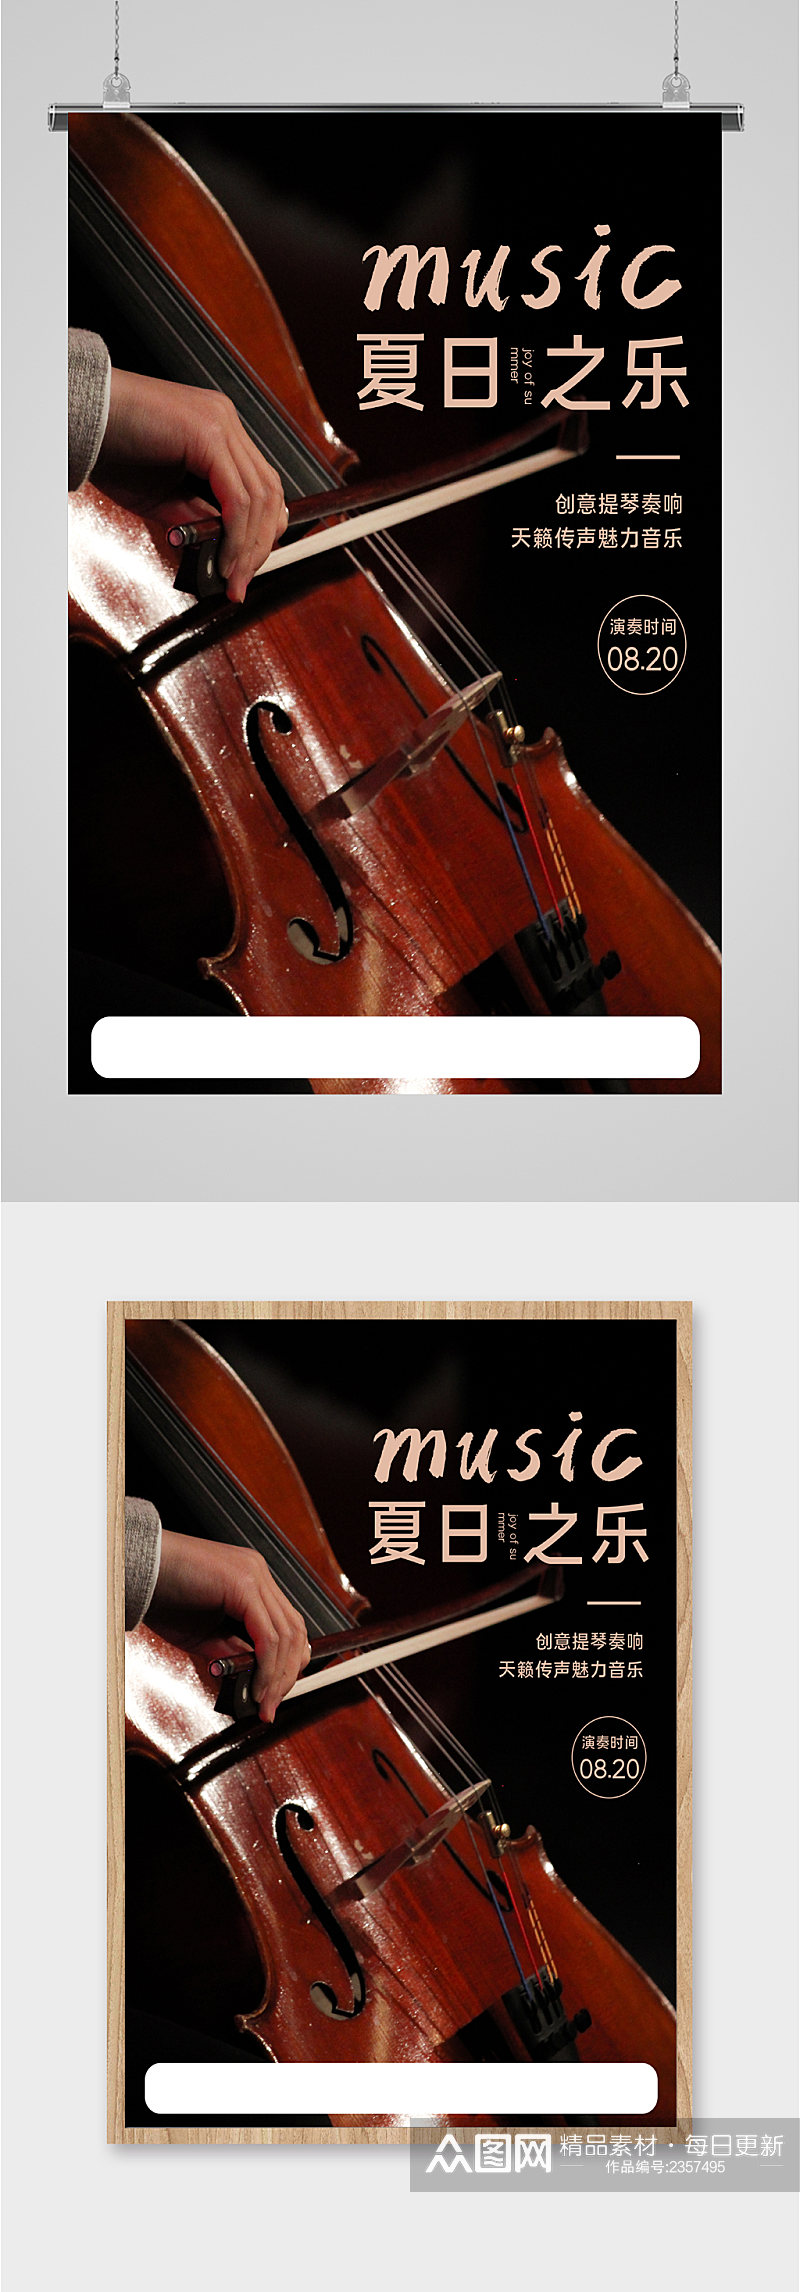 创意大提琴音乐会海报素材